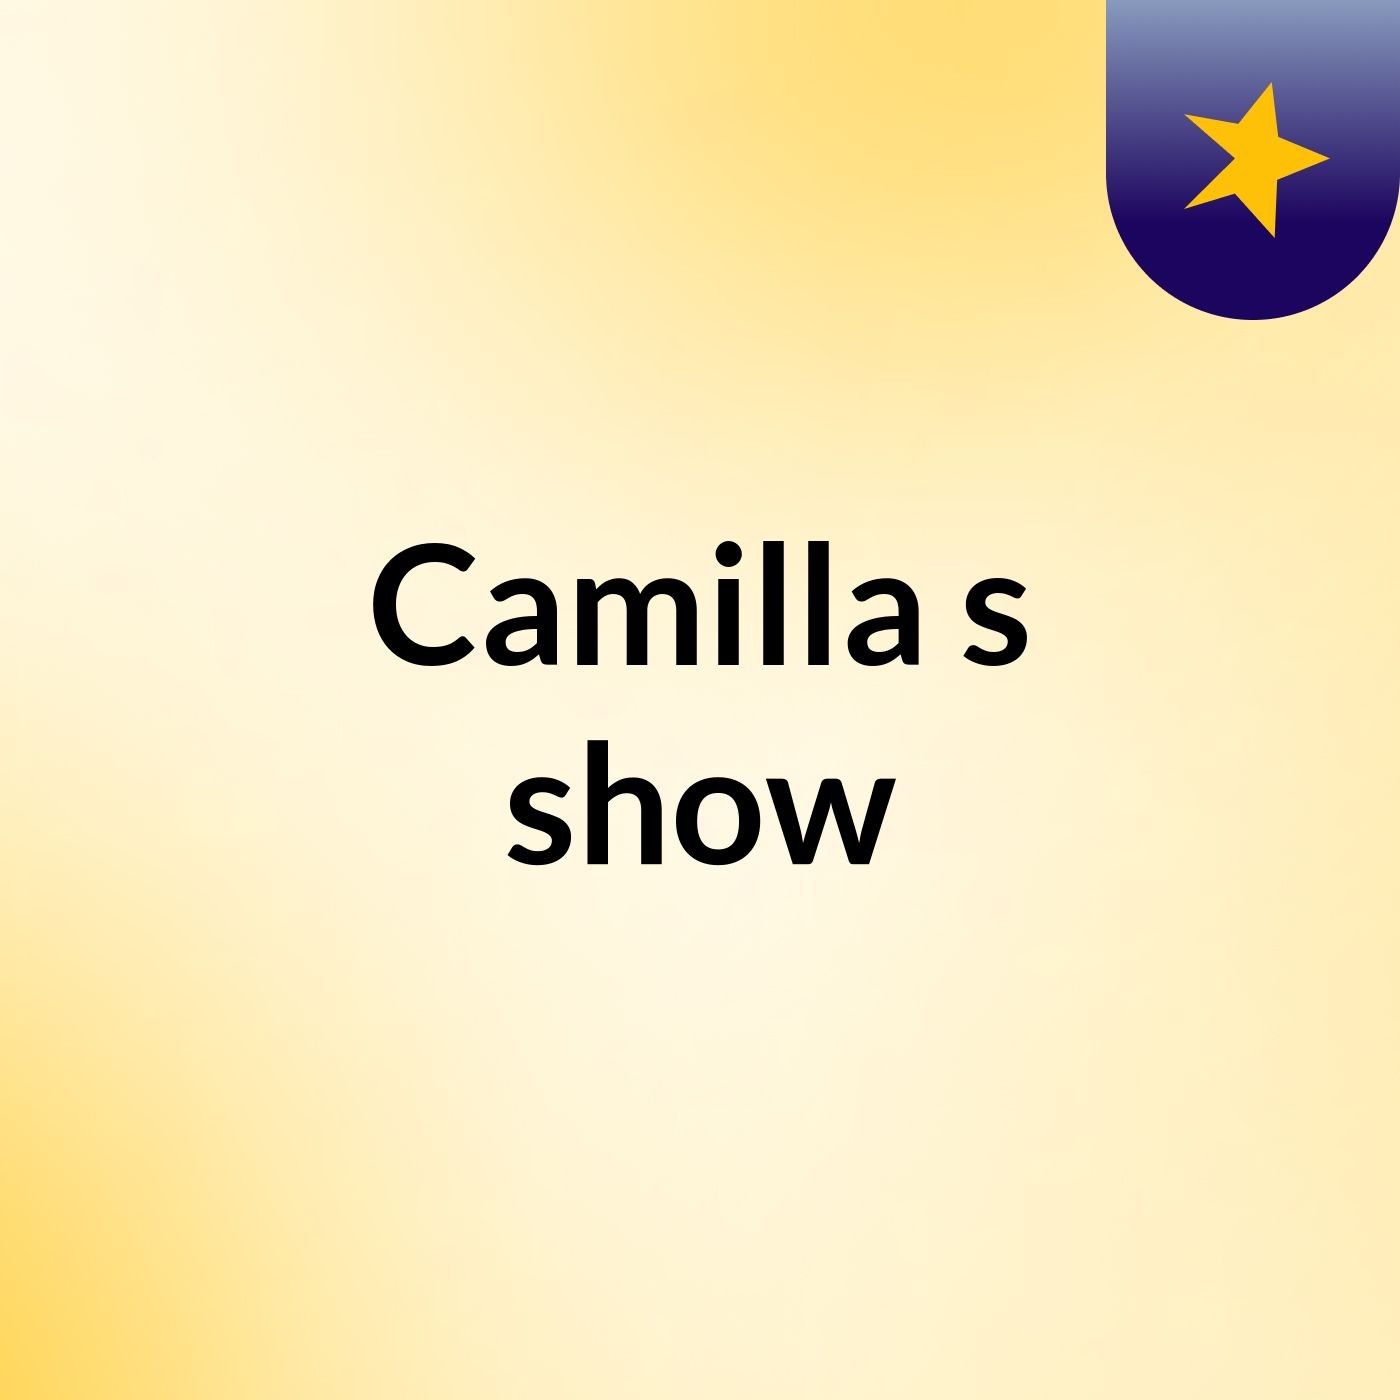 Camilla's show